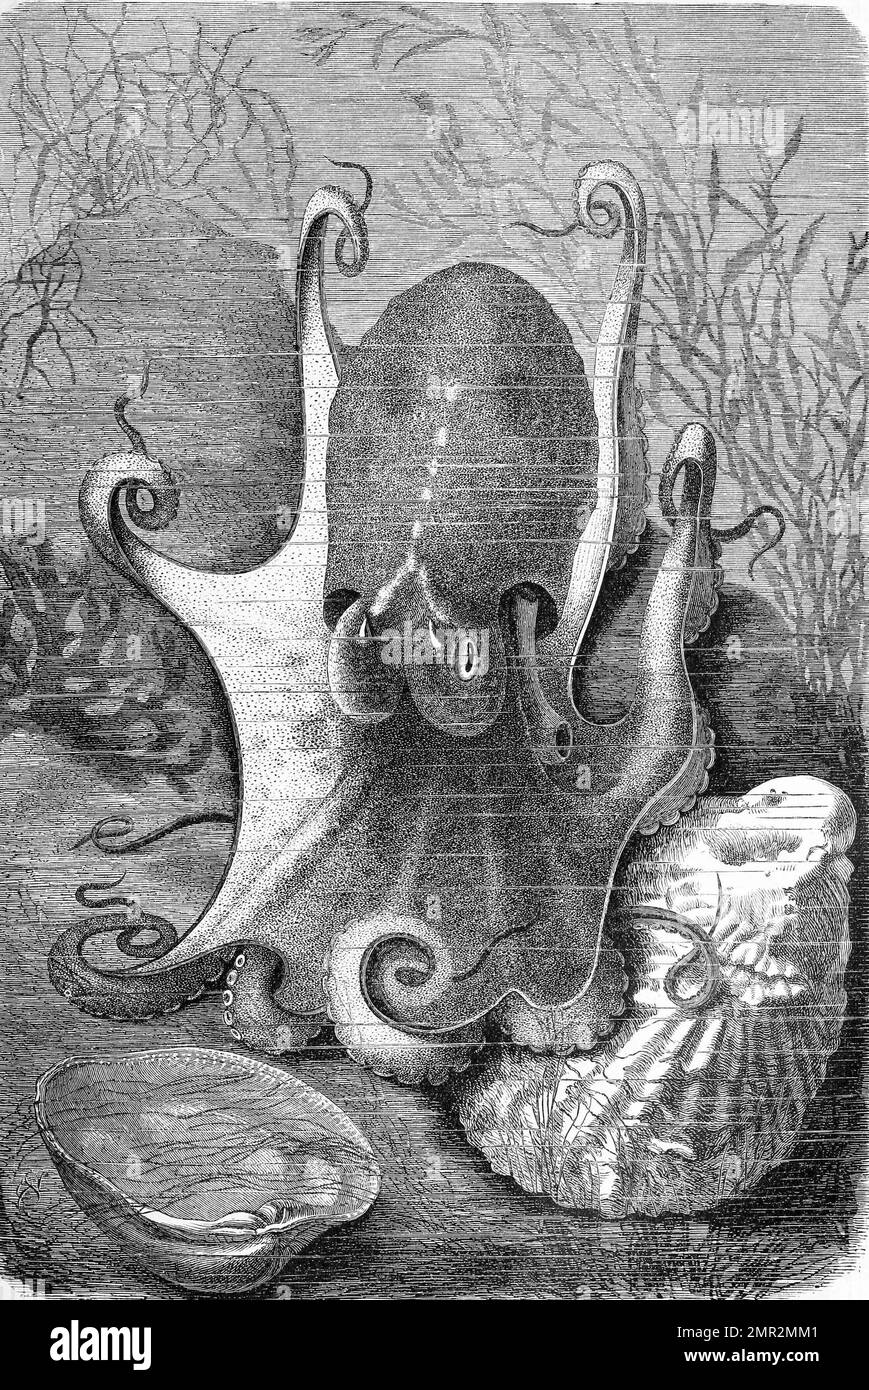 Moschuskrake, Eledone moschata ist ein kleiner Kopffüßer aus der Gattung Eledone, Historisch, ristorante digitale Reproduktion von einer Vorlage aus dem 19. Jahrhundert Foto Stock